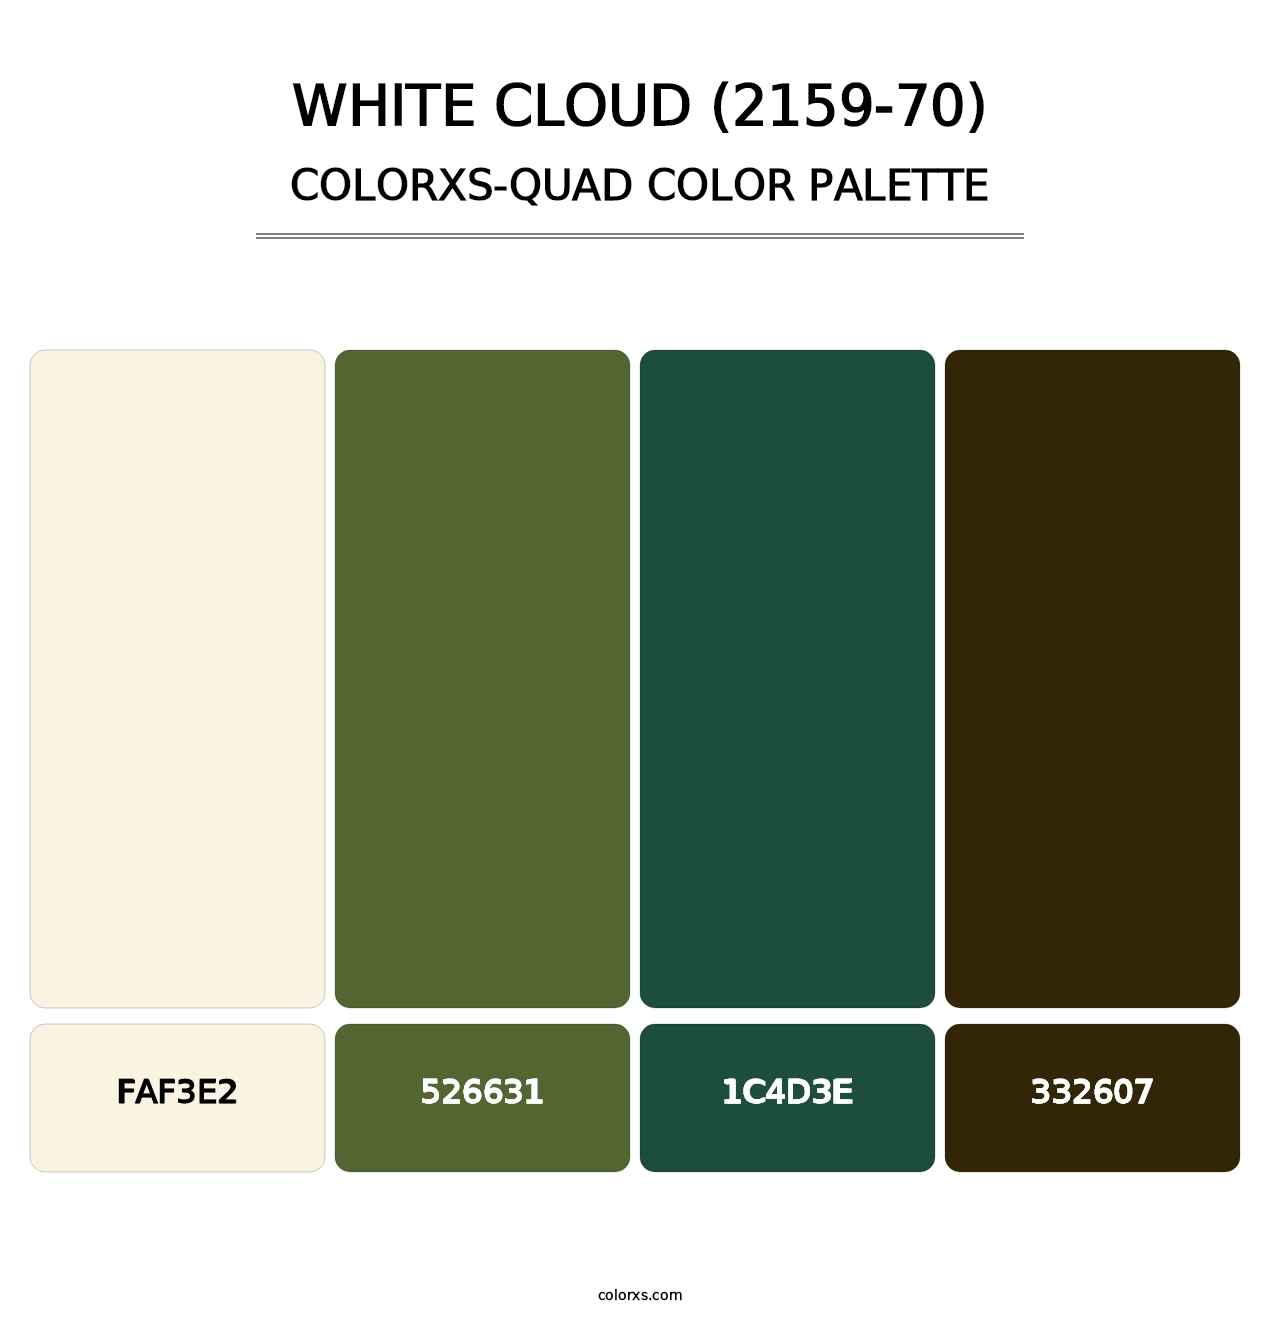 White Cloud (2159-70) - Colorxs Quad Palette